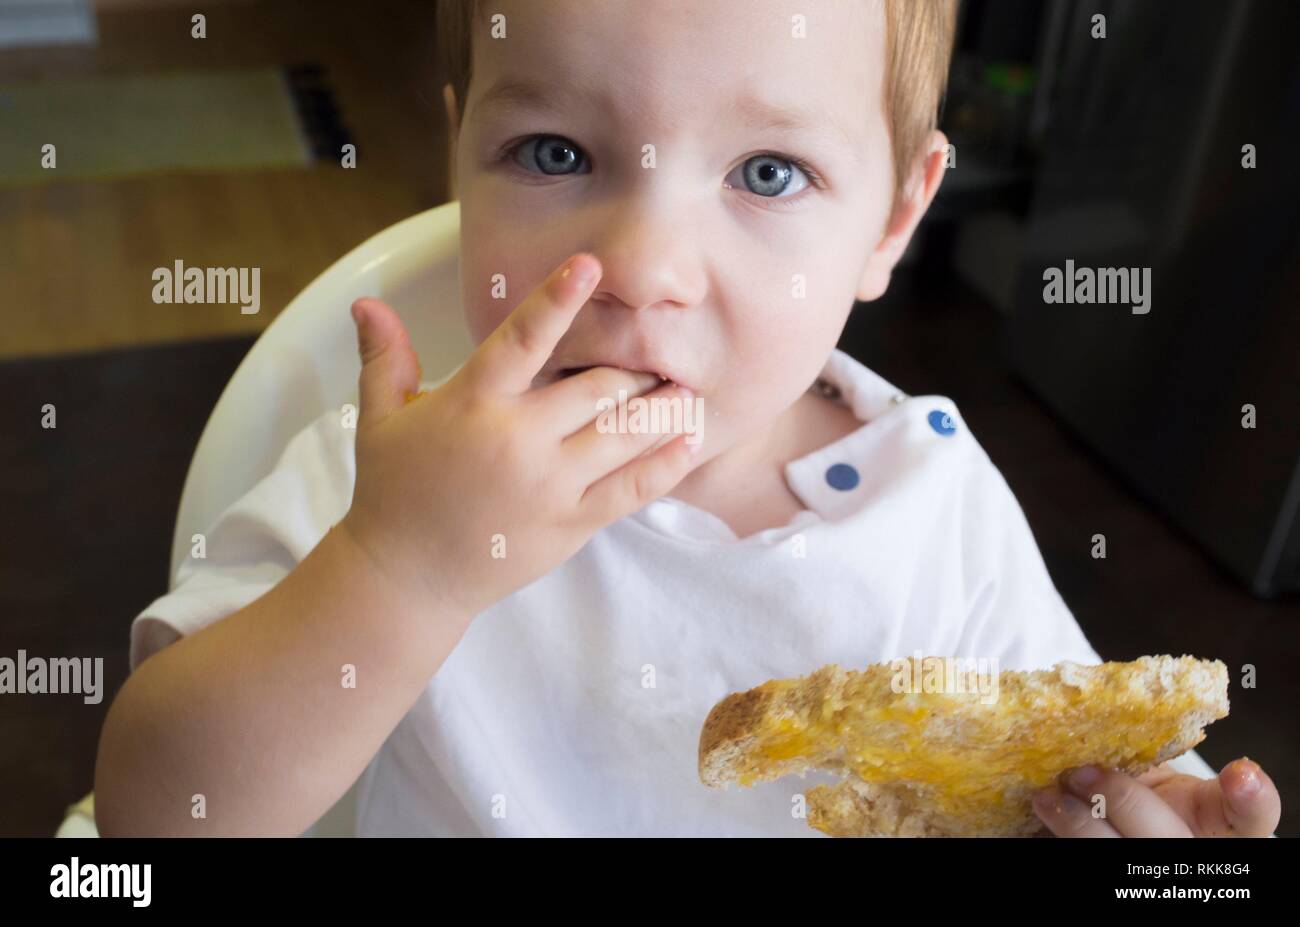 Little baby boy eating toast de confiture de pêches. Libre. Banque D'Images